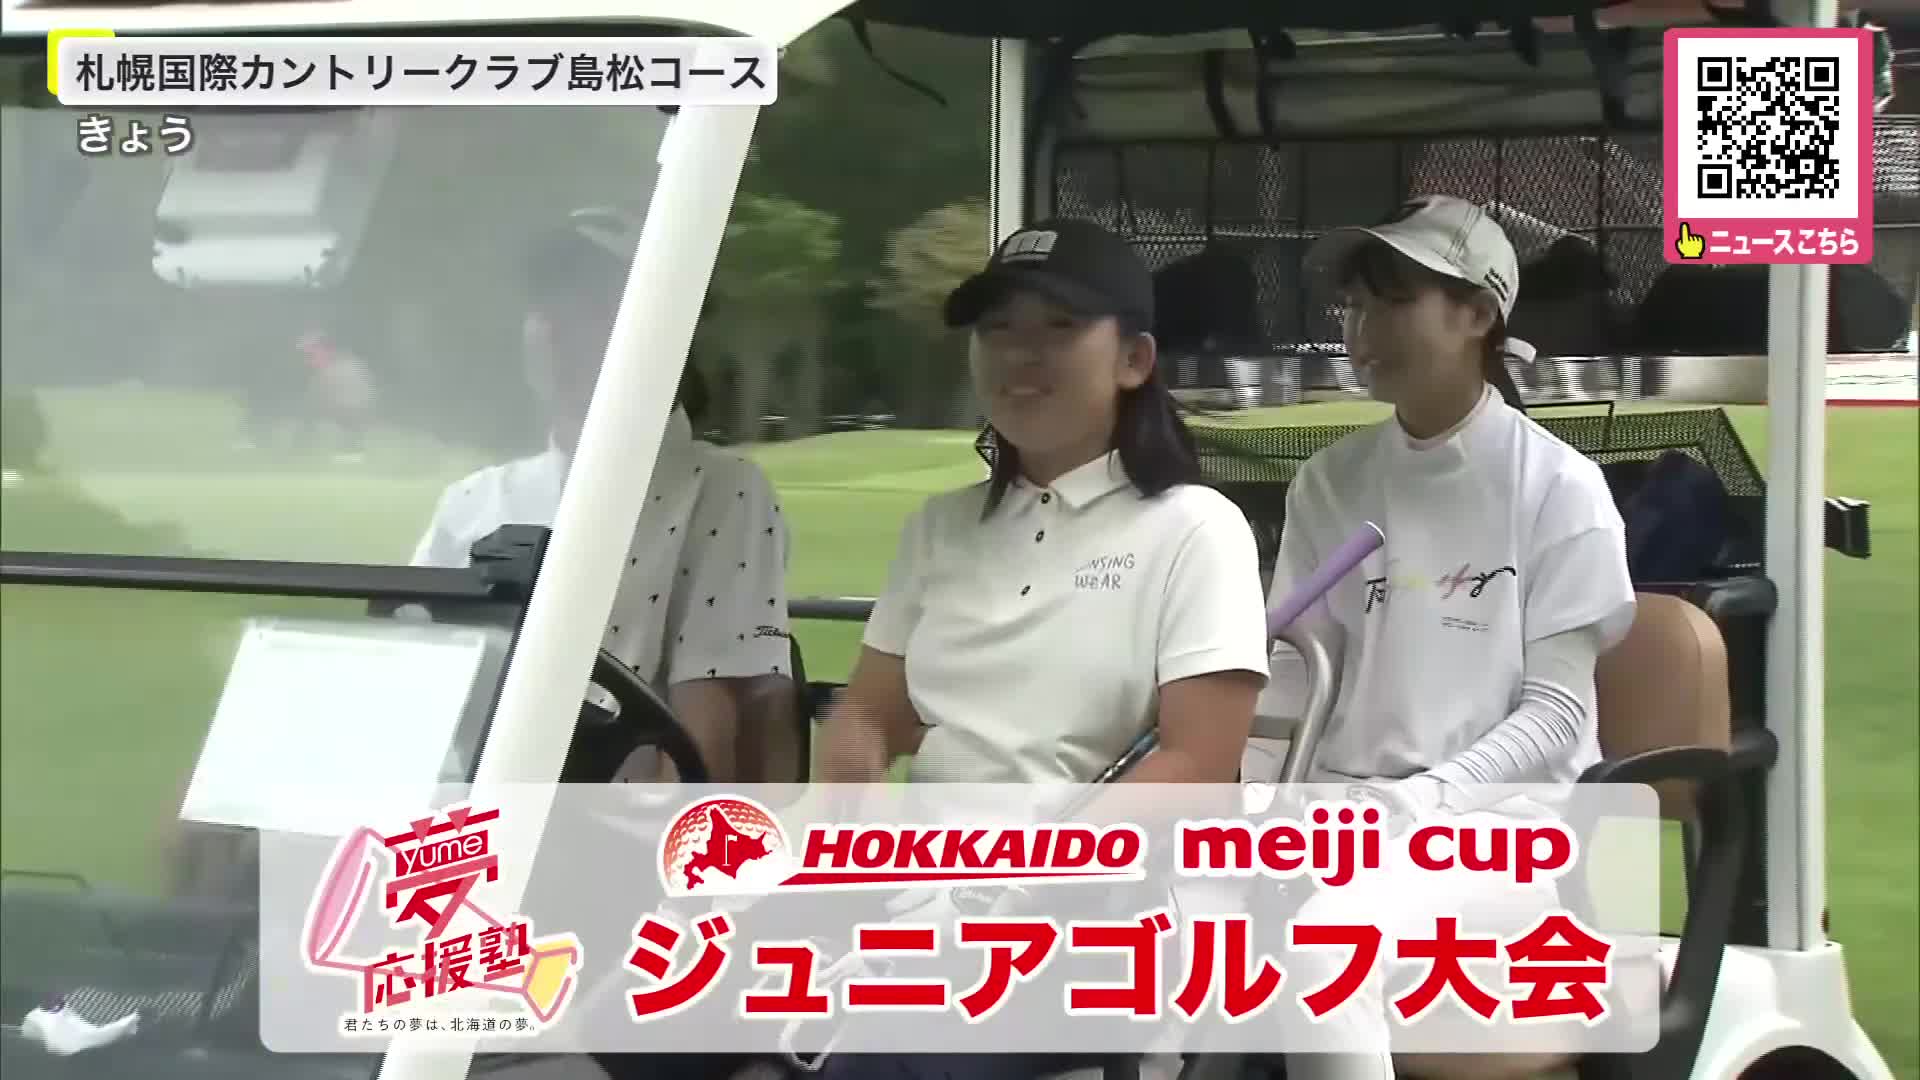 17歳以下対象の「北海道meijiカップジュニアゴルフ大会」開催 72人が出場 明治監修の昼食も振舞われる 北海道北広島市